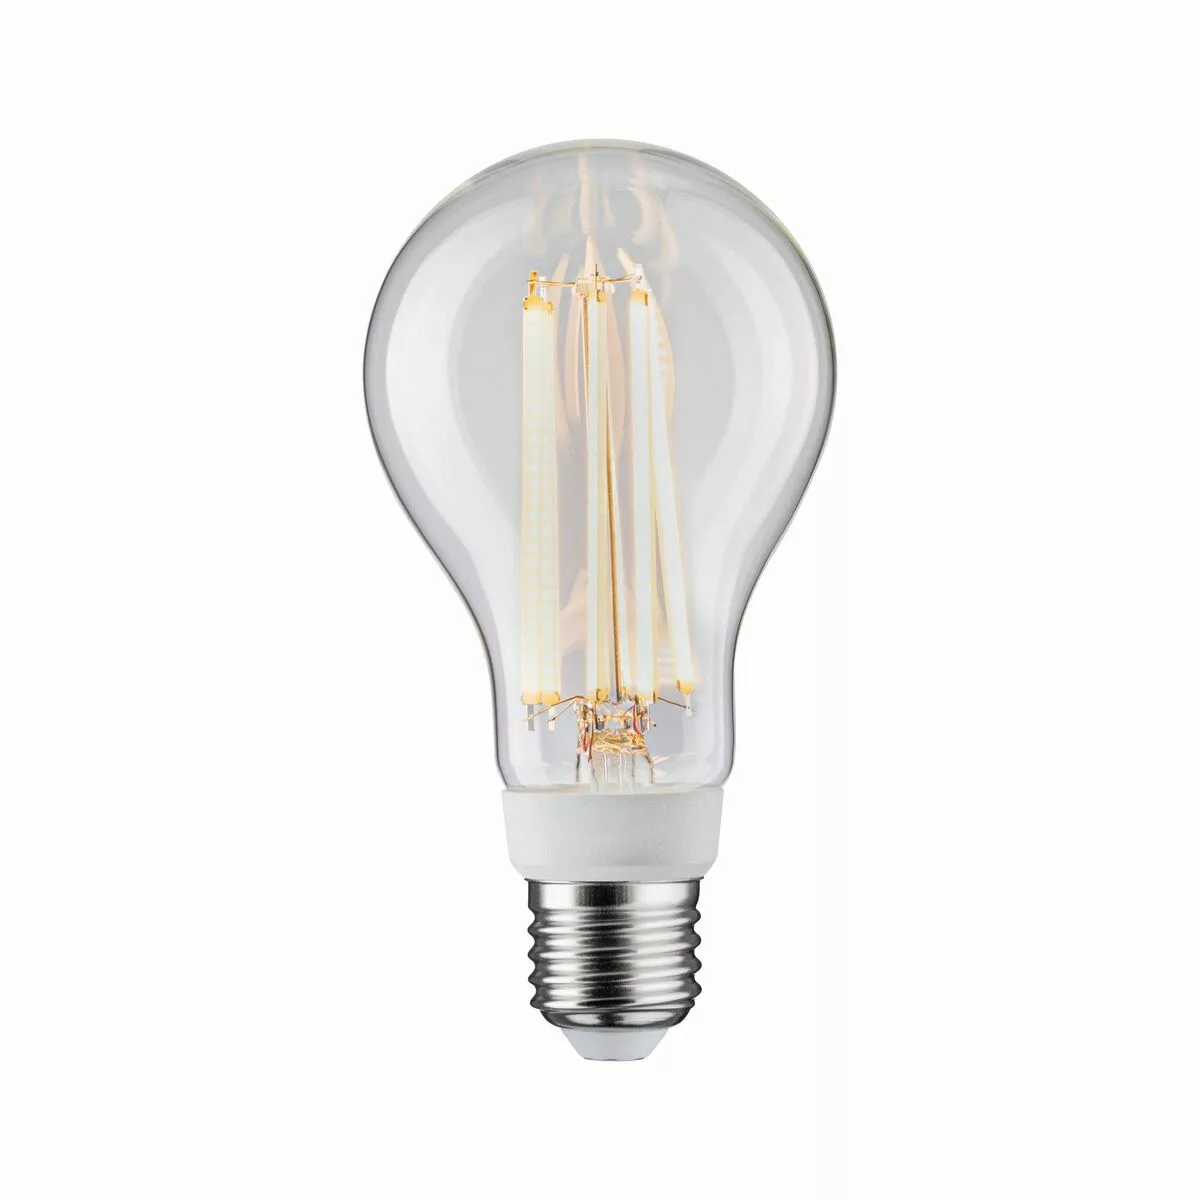 Led-lampe Paulmann 28817 E27 15 W (restauriert A+) günstig online kaufen